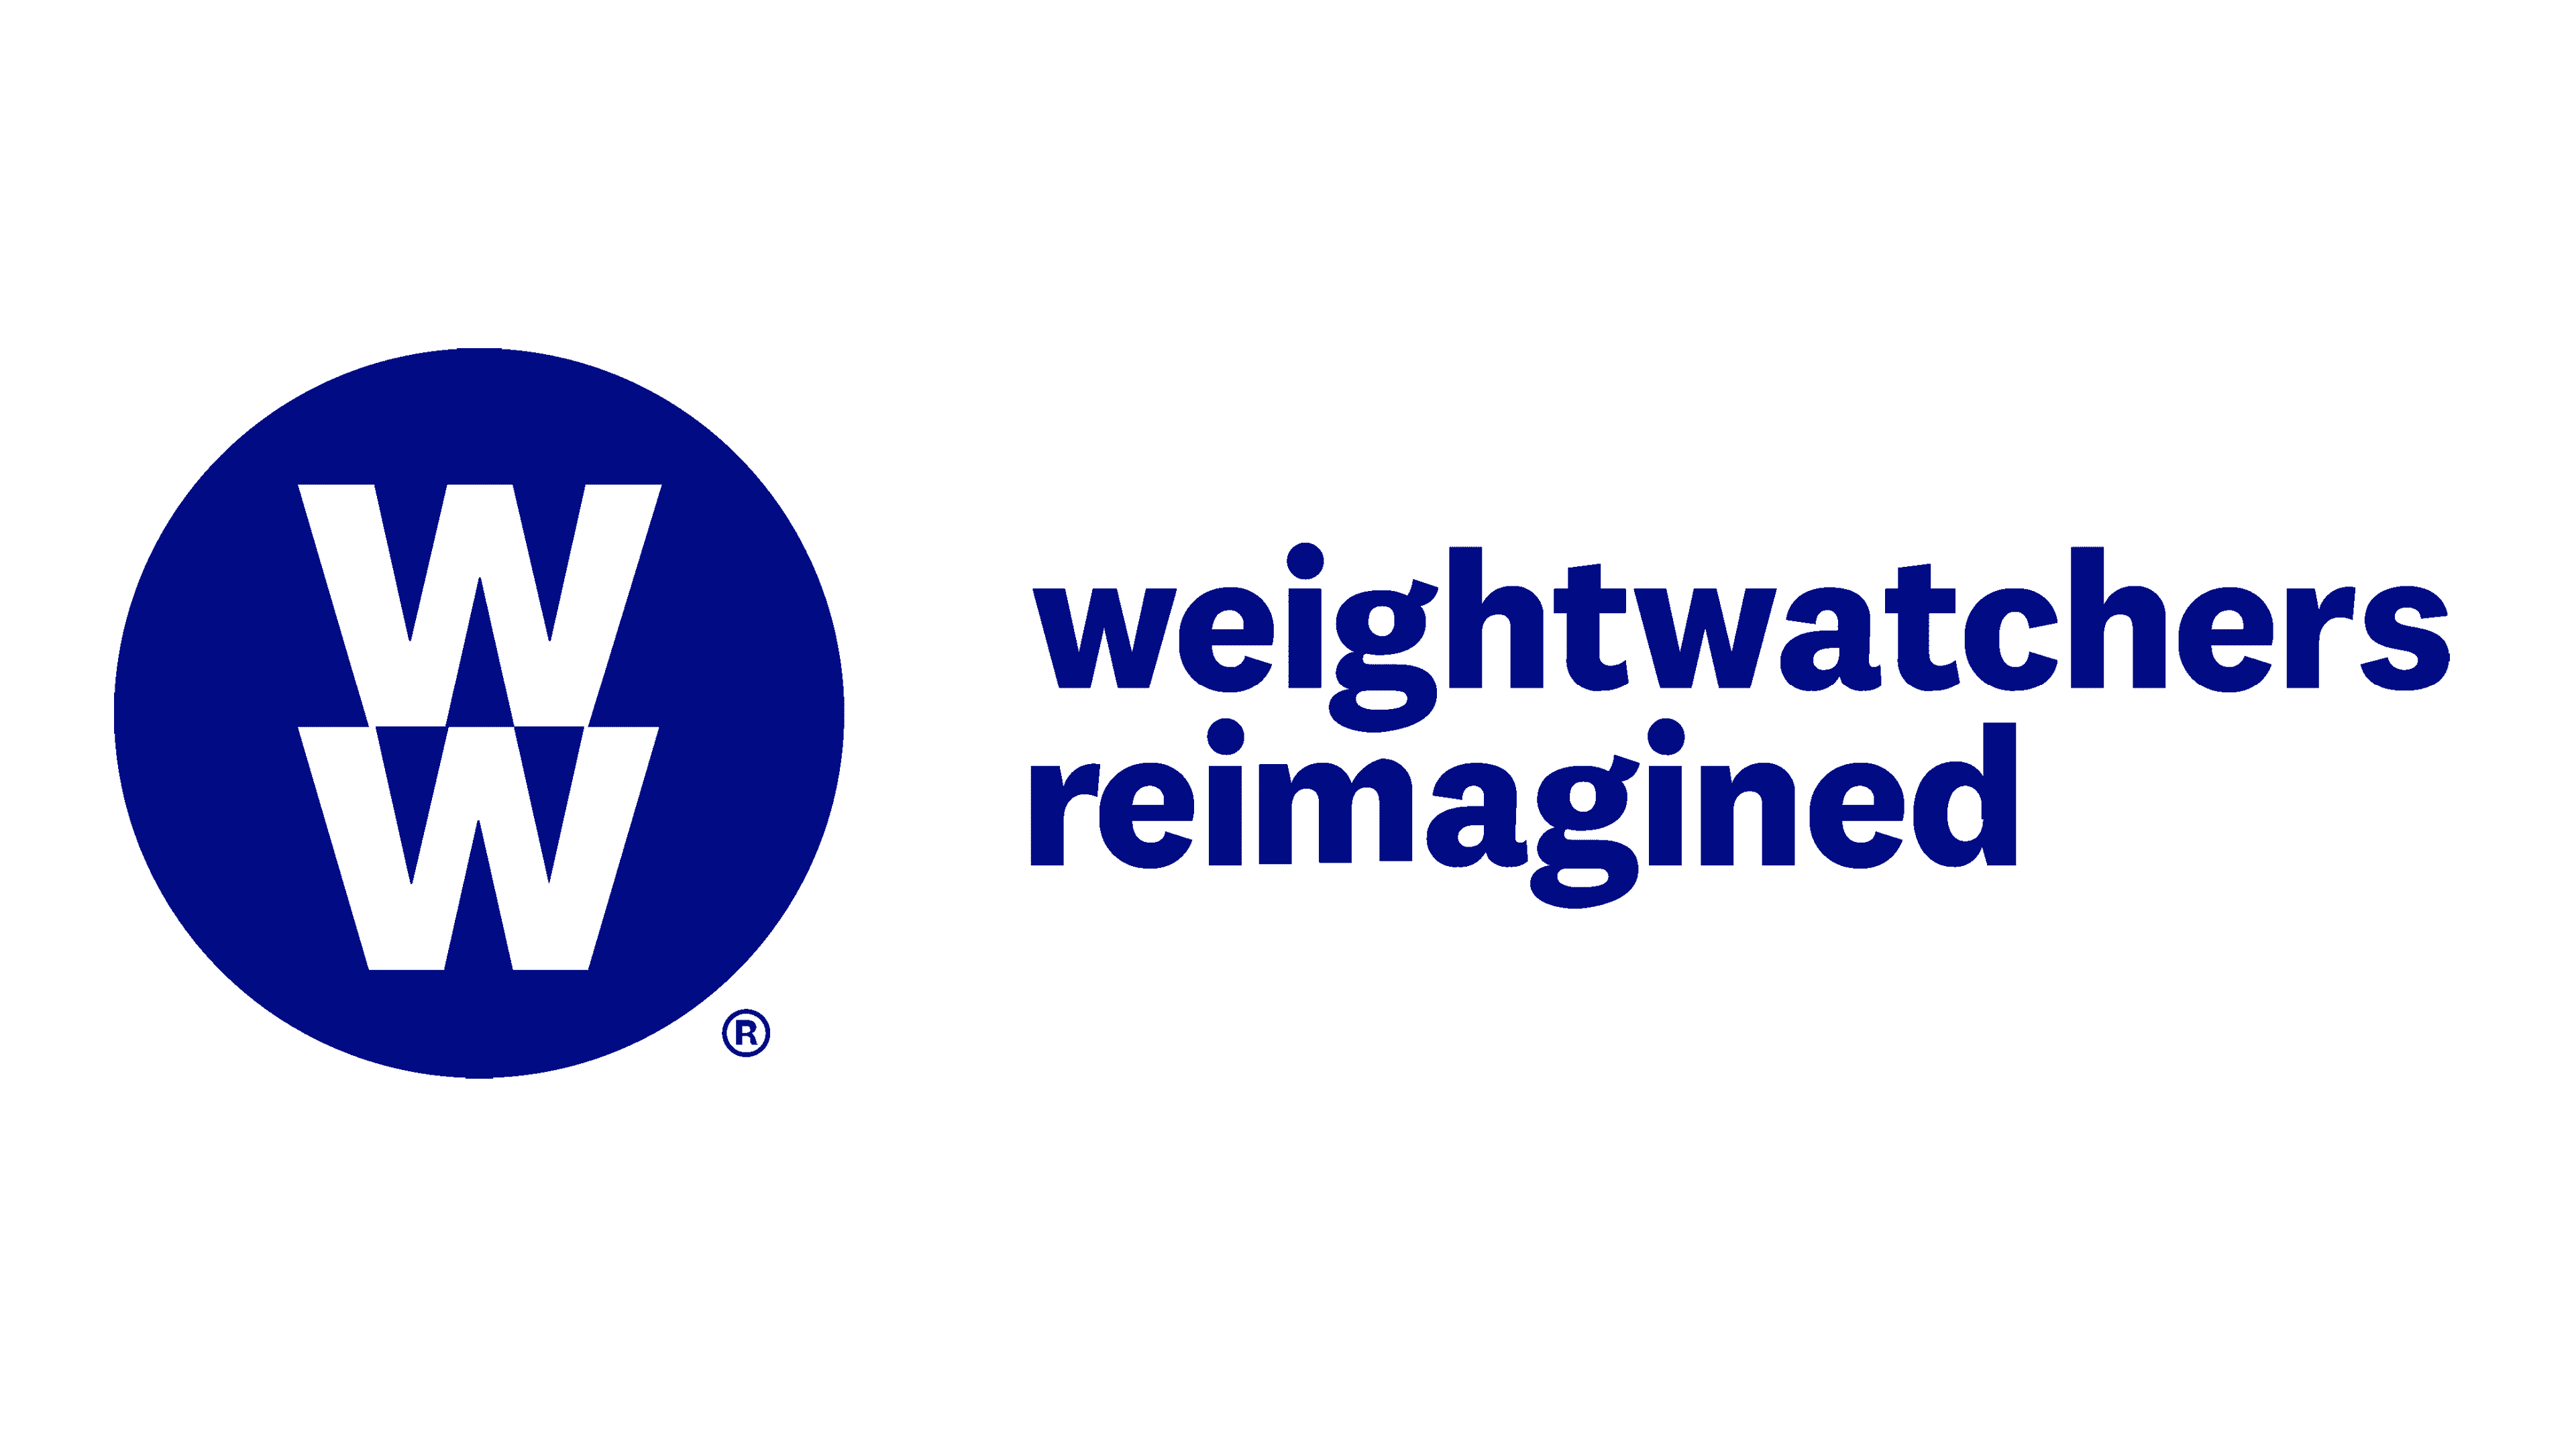 Weight Watchers